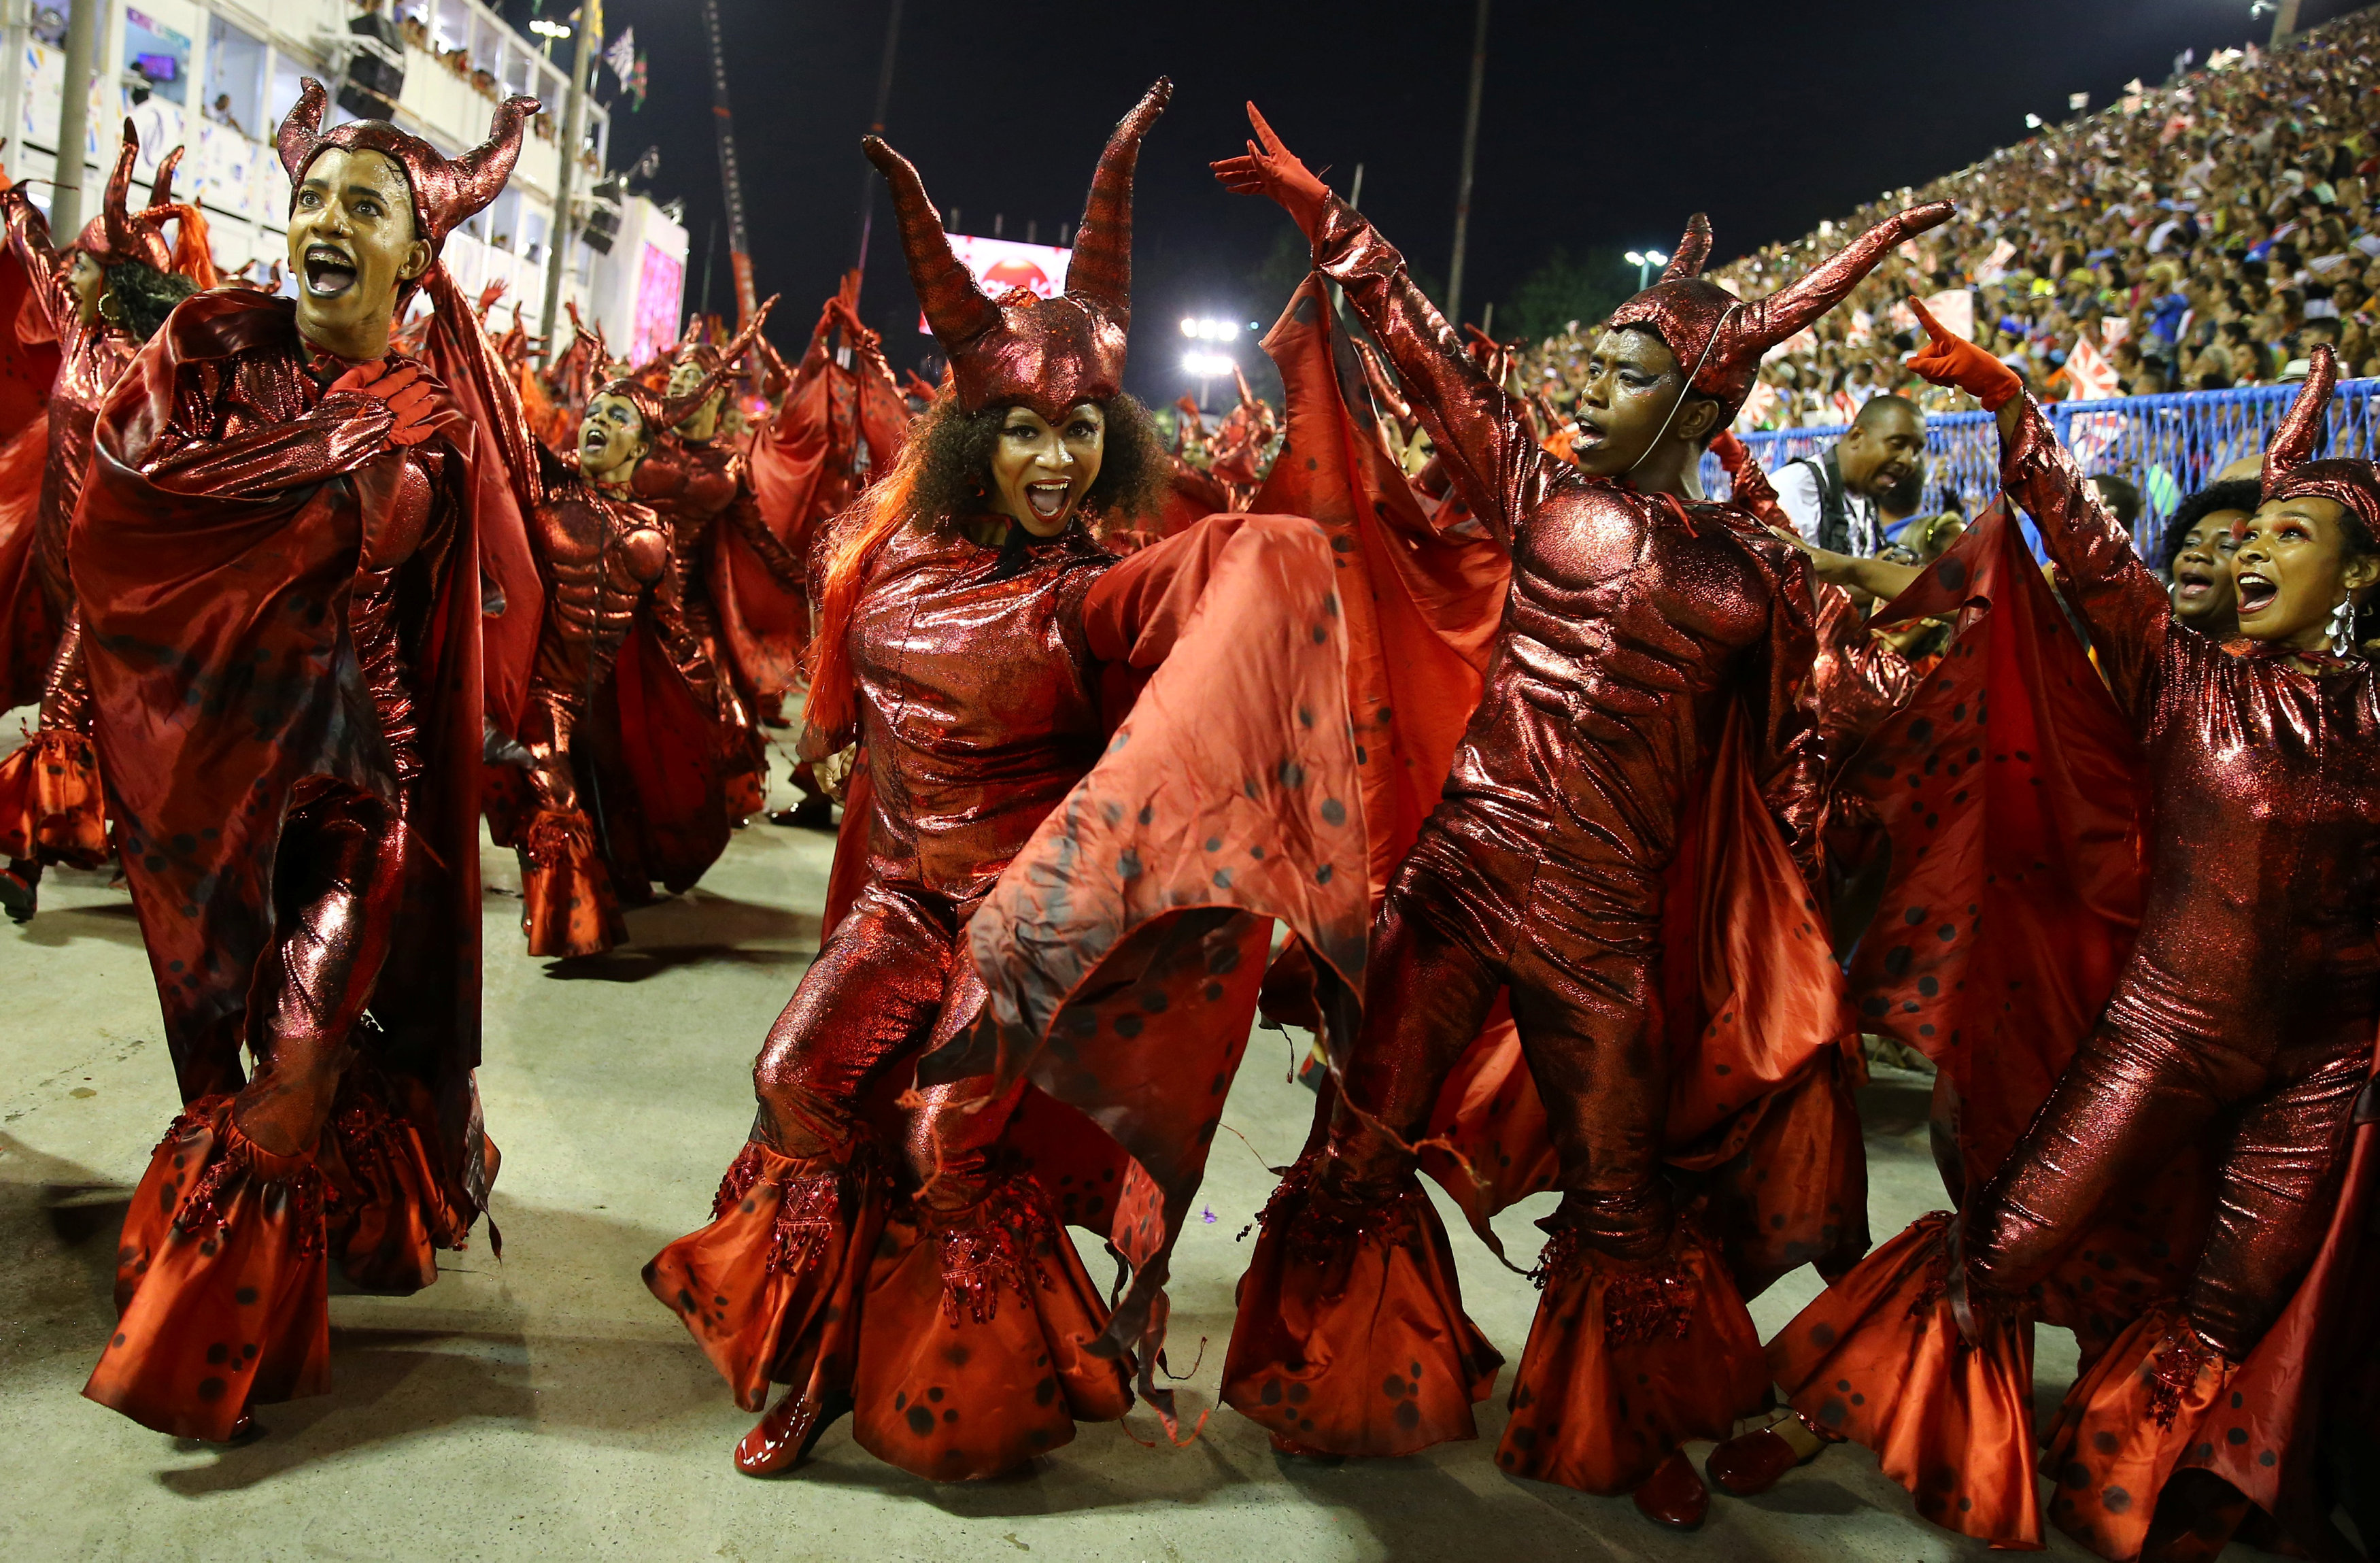 شباب يرتدون زى أحمر خاص للاحتفالا بكرنفال رقصة السامبا فى البرازيل